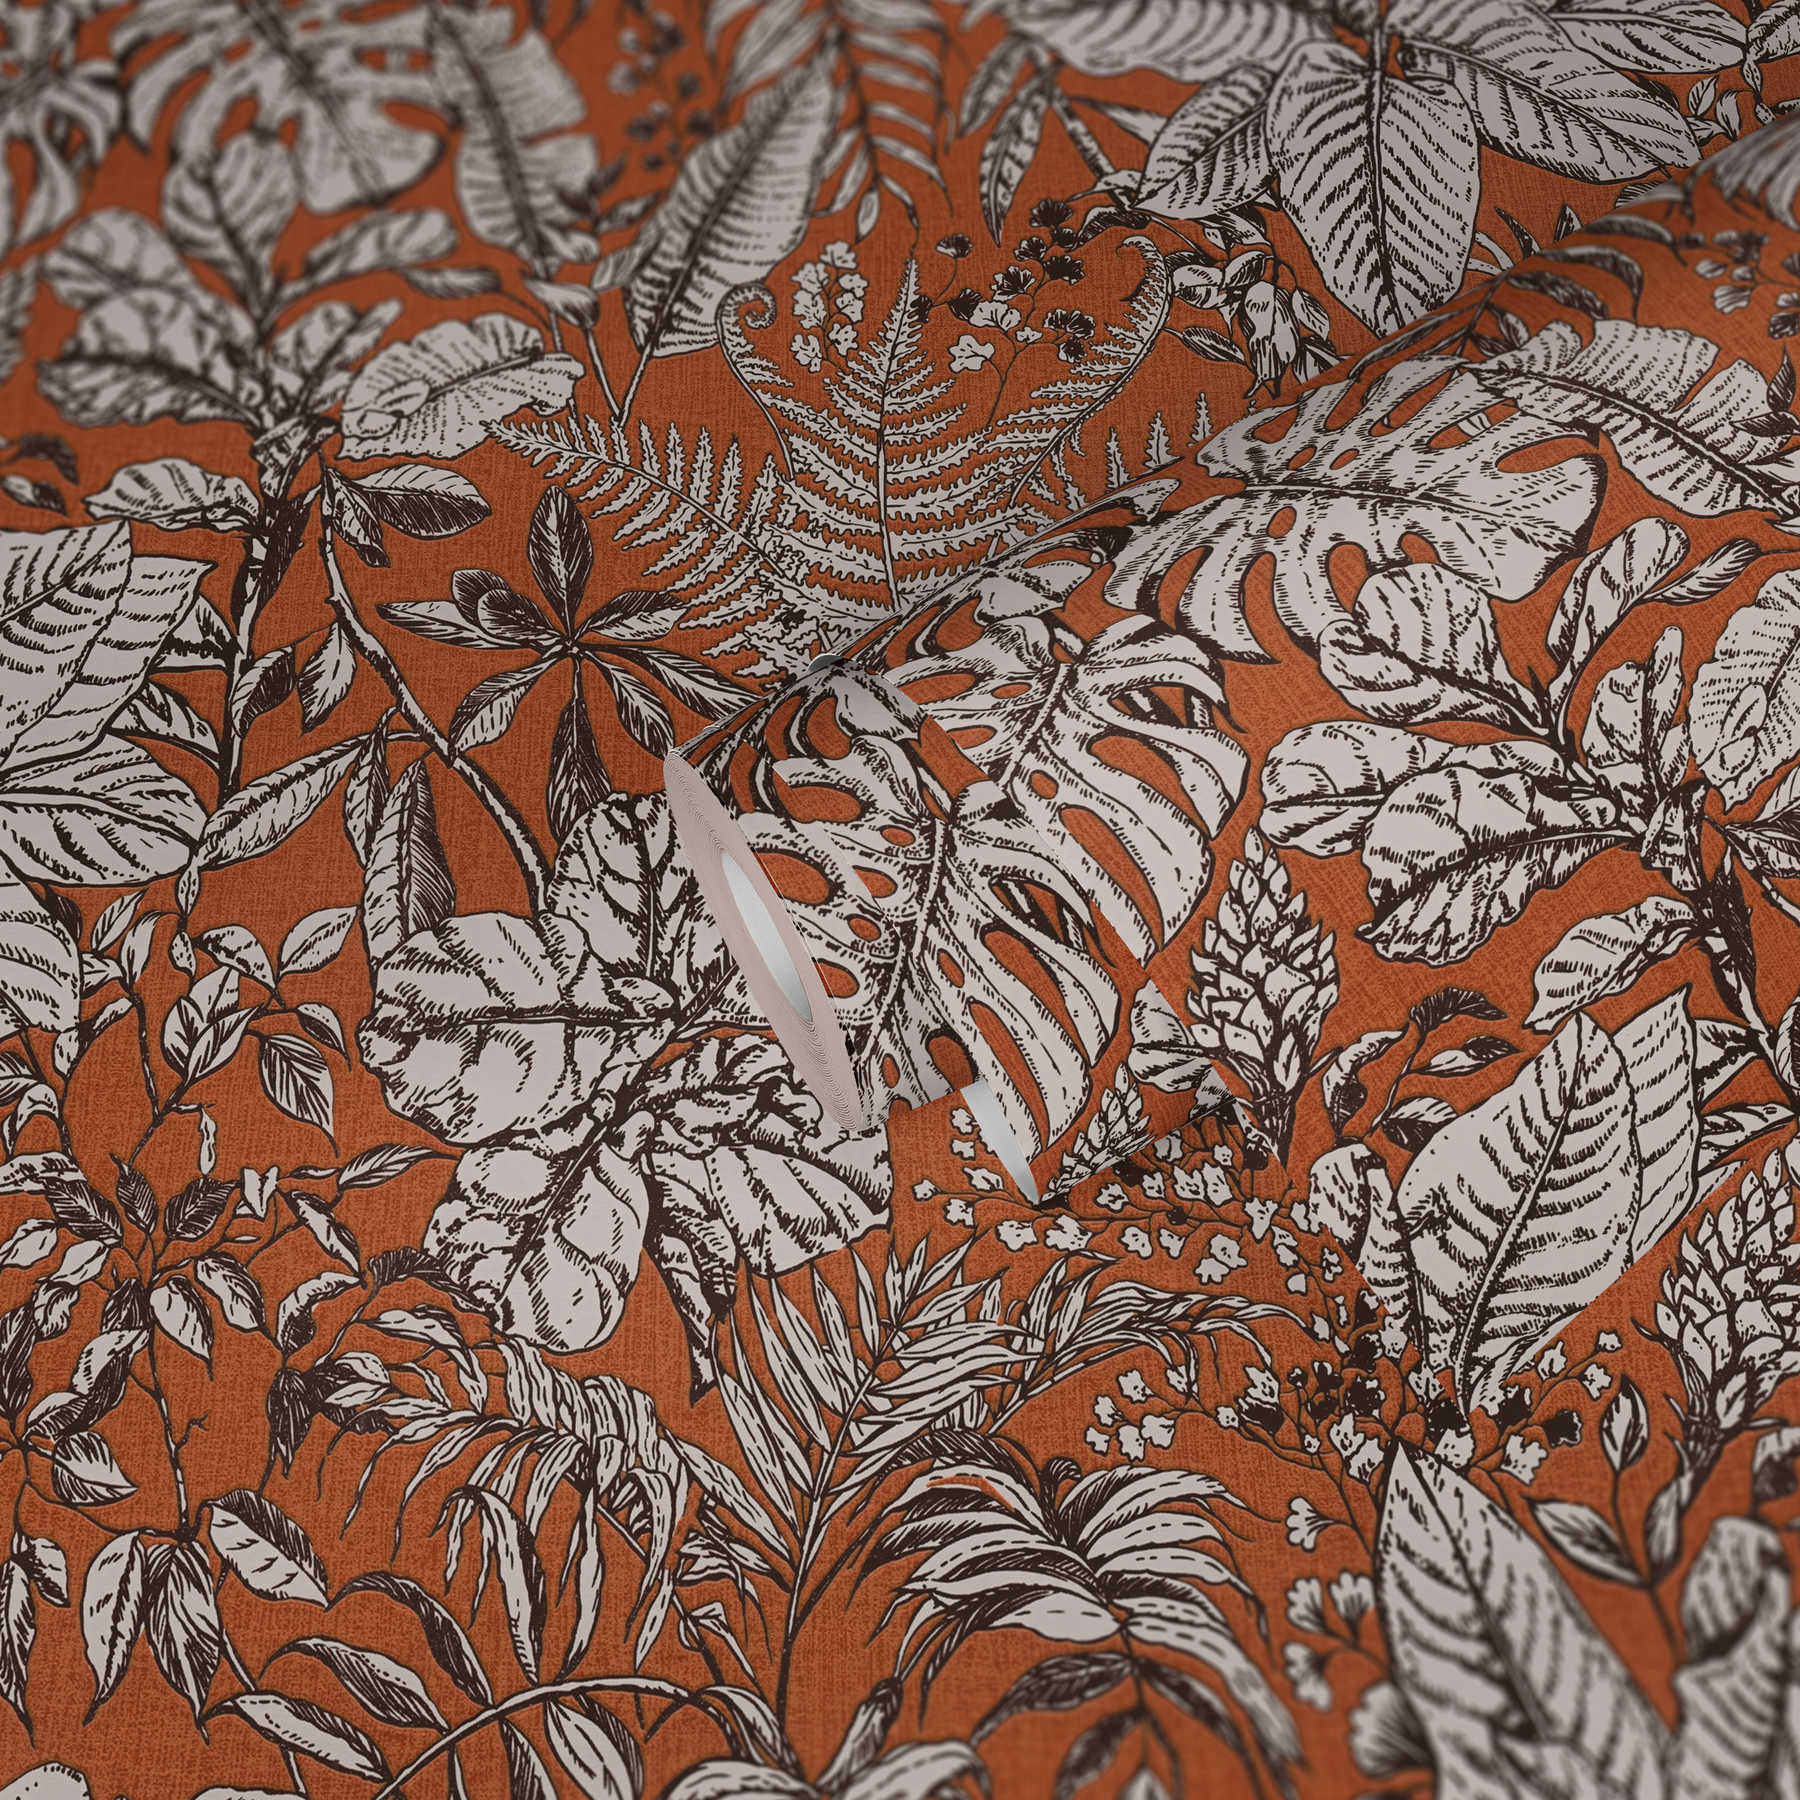             Papel pintado de hojas de selva, monstera y helechos - naranja, blanco, marrón
        